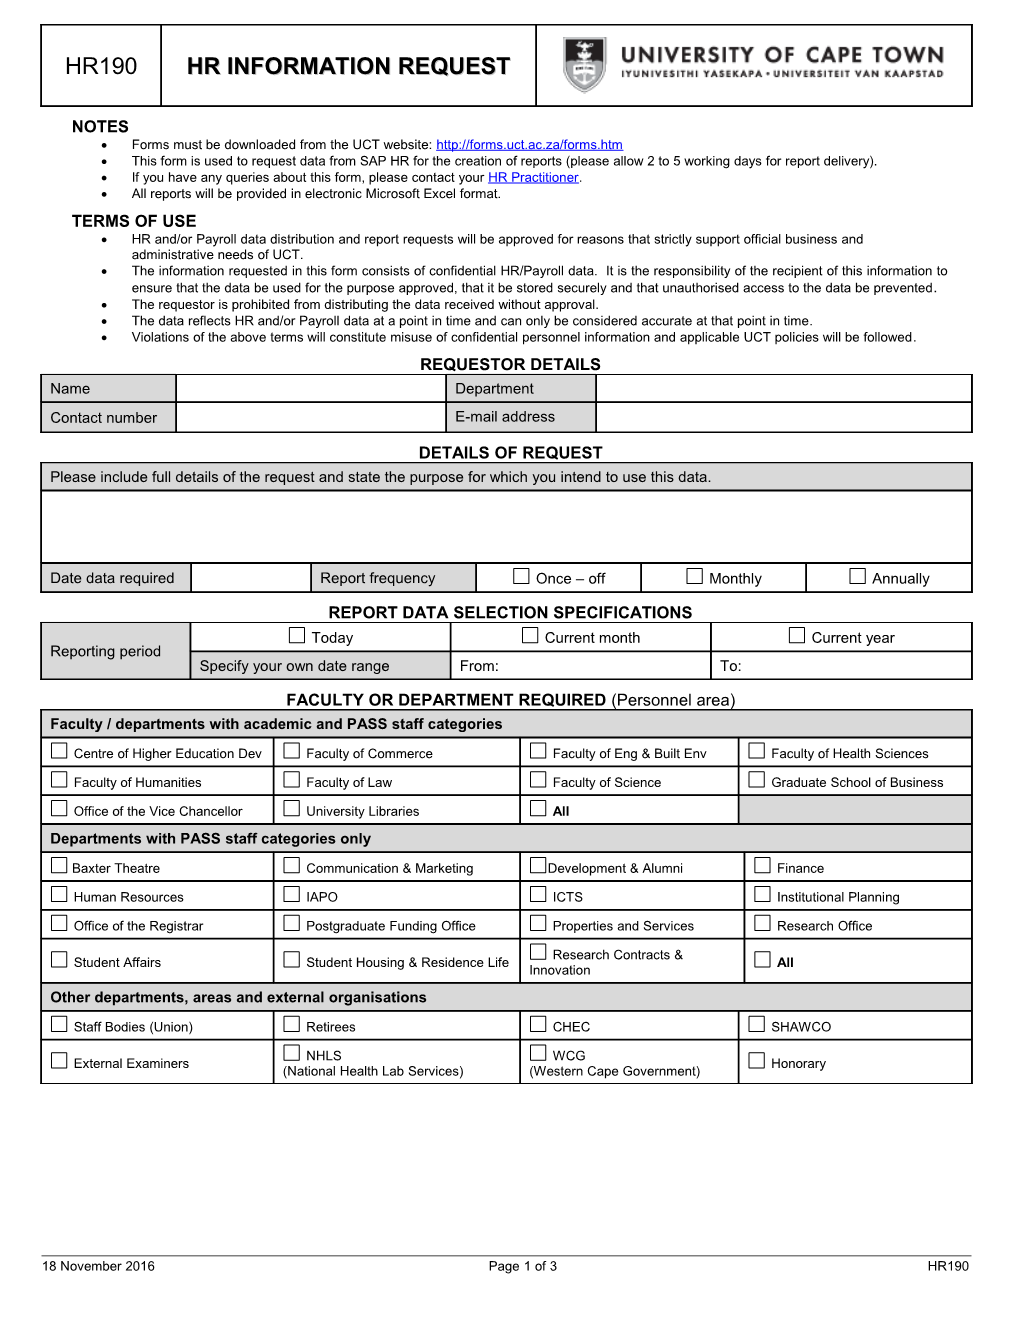 HR Information Request Form